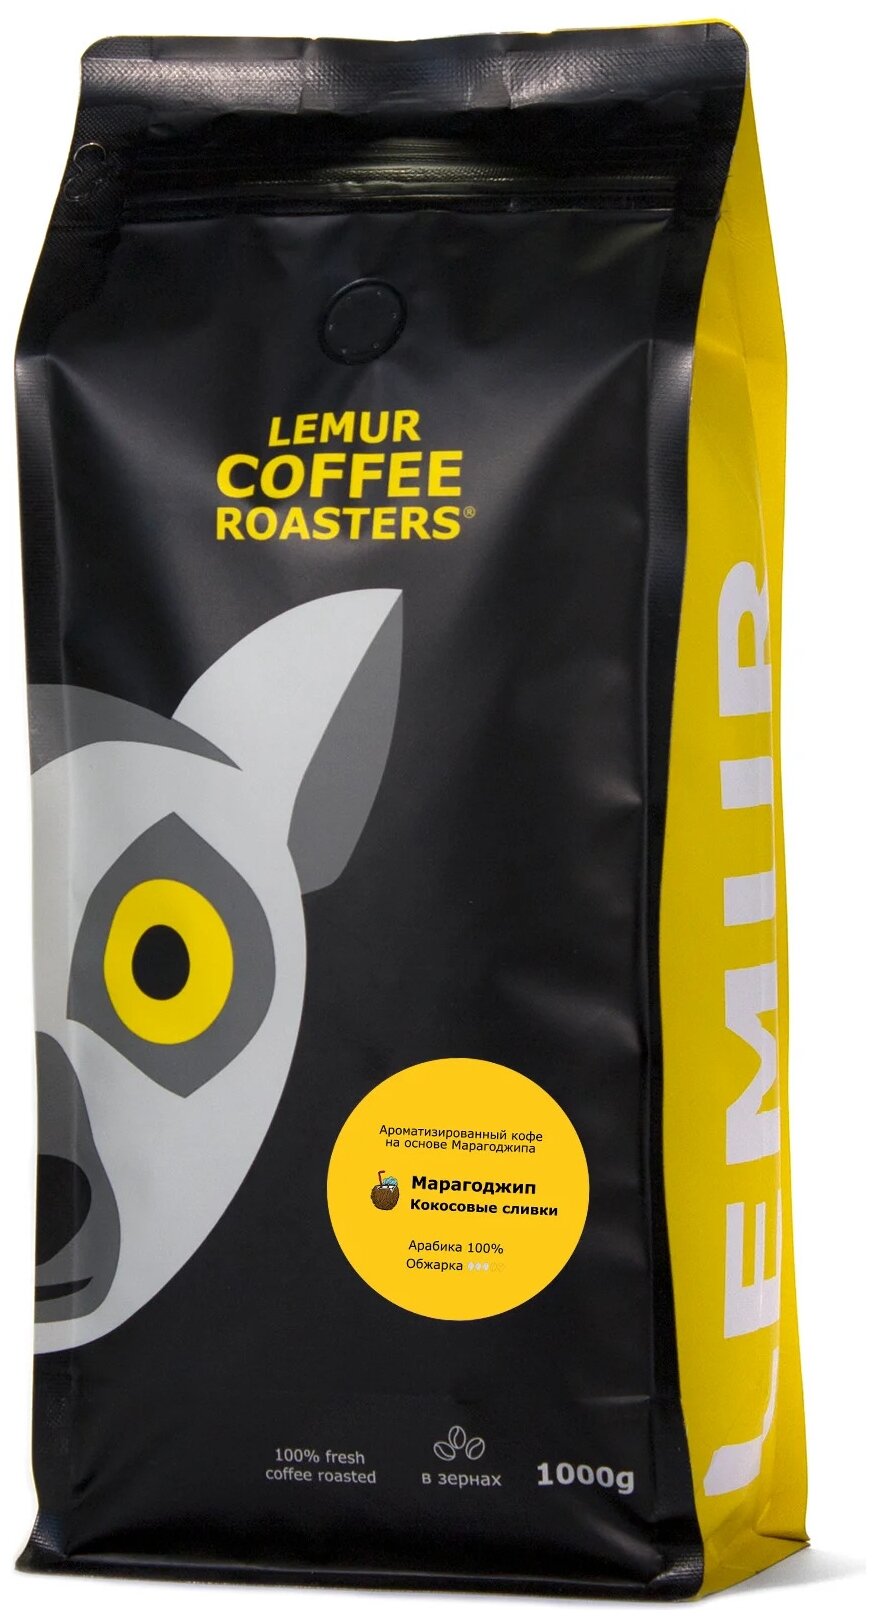 Ароматизированный кофе в зернах Марагоджип Кокосовые сливки Lemur Coffee Roasters, 1кг - фотография № 1